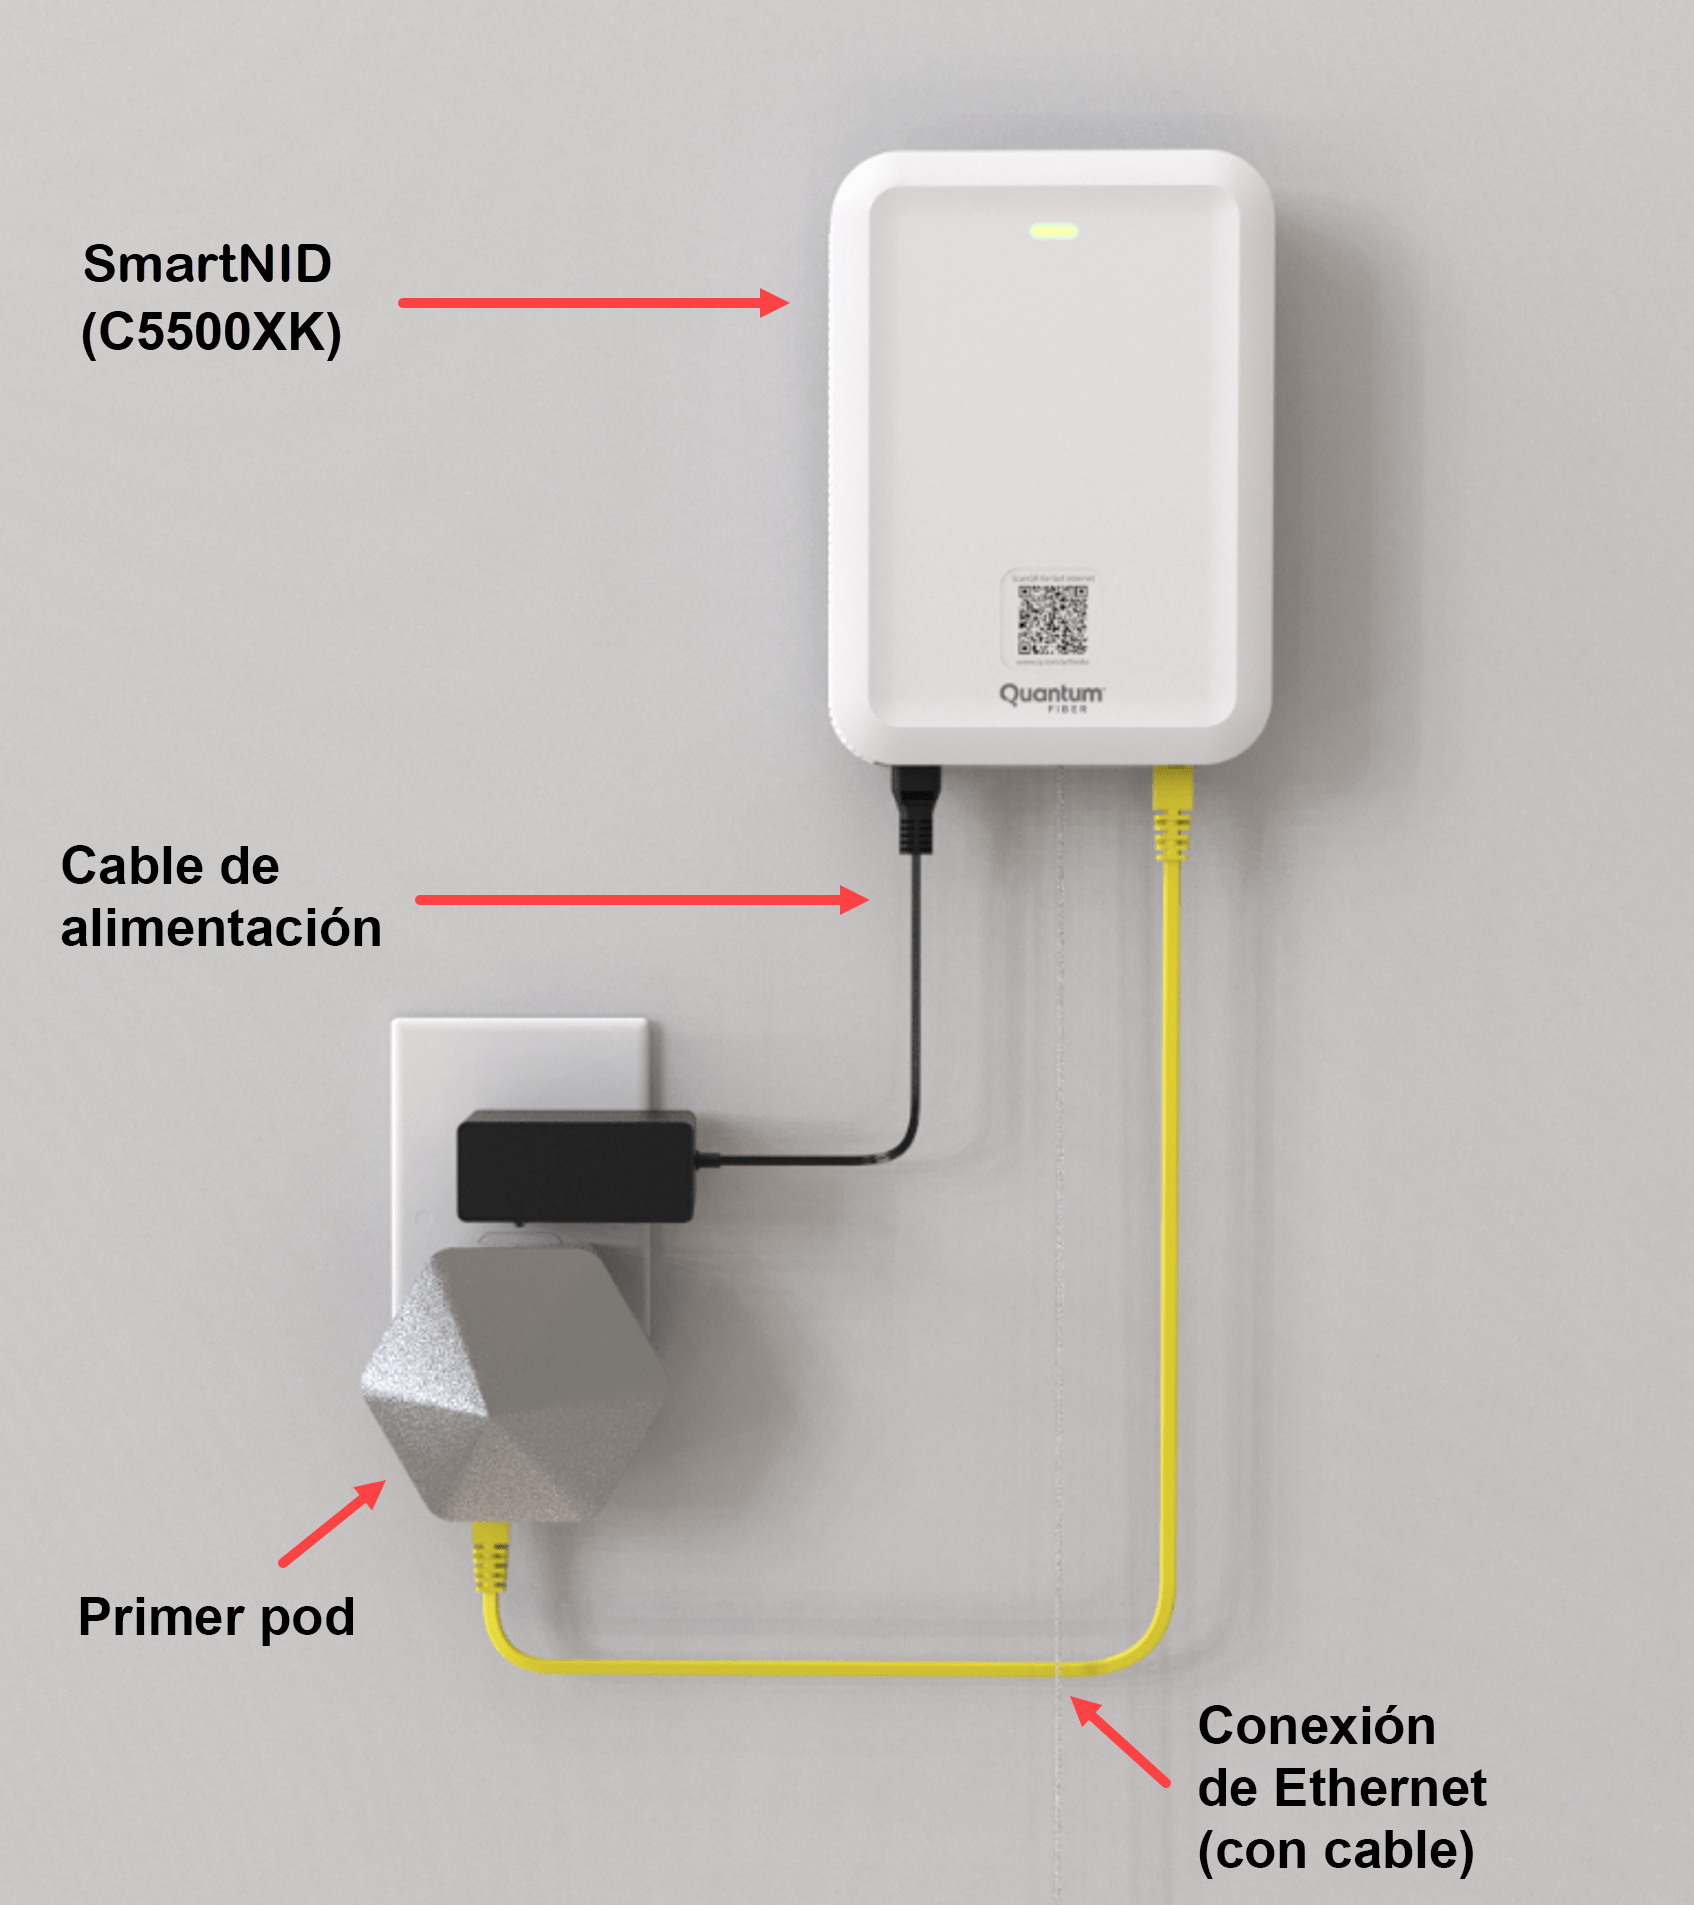 SmartNID installed with WiFi pod